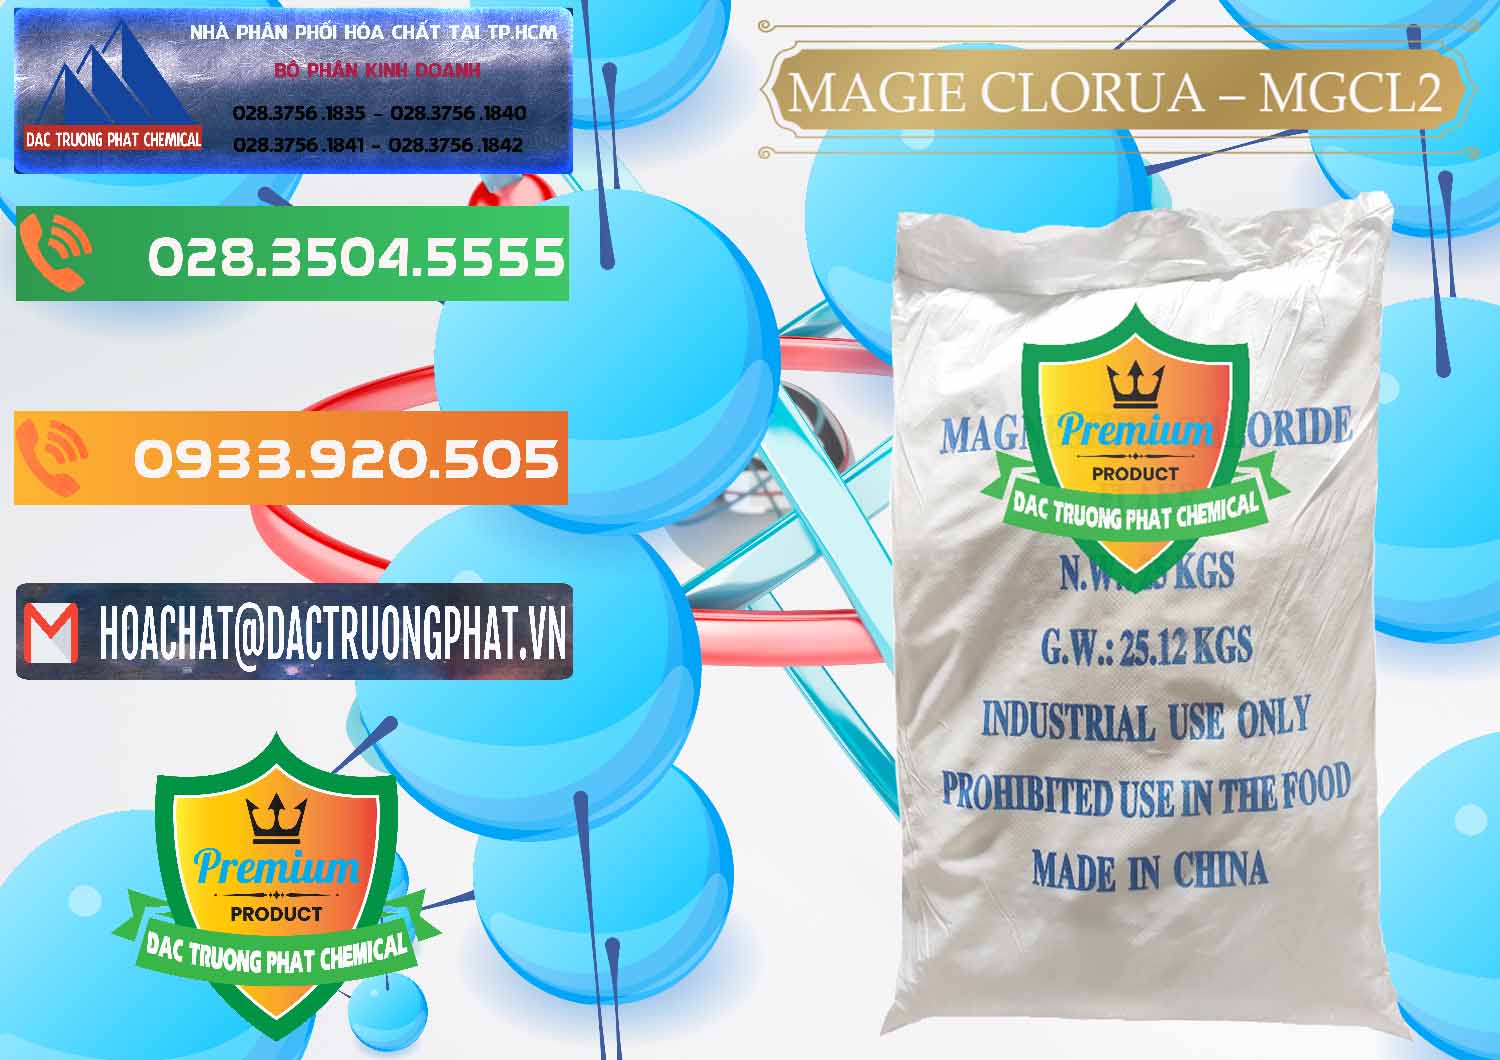 Nhà phân phối & bán Magie Clorua – MGCL2 96% Dạng Vảy Trung Quốc China - 0091 - Nhà cung ứng & phân phối hóa chất tại TP.HCM - hoachatxulynuoc.com.vn